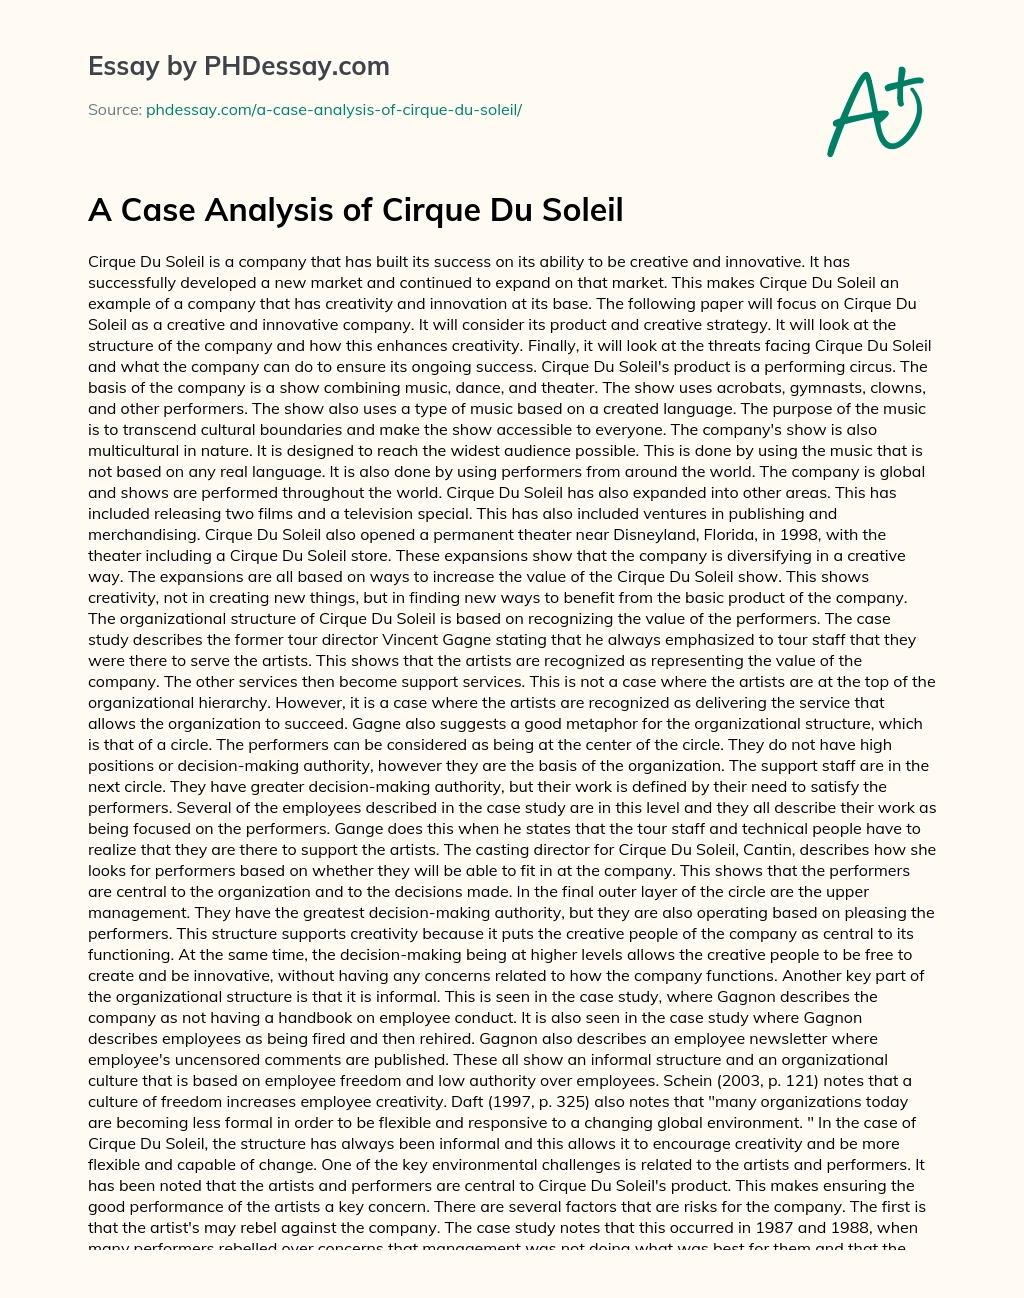 A Case Analysis of Cirque Du Soleil essay